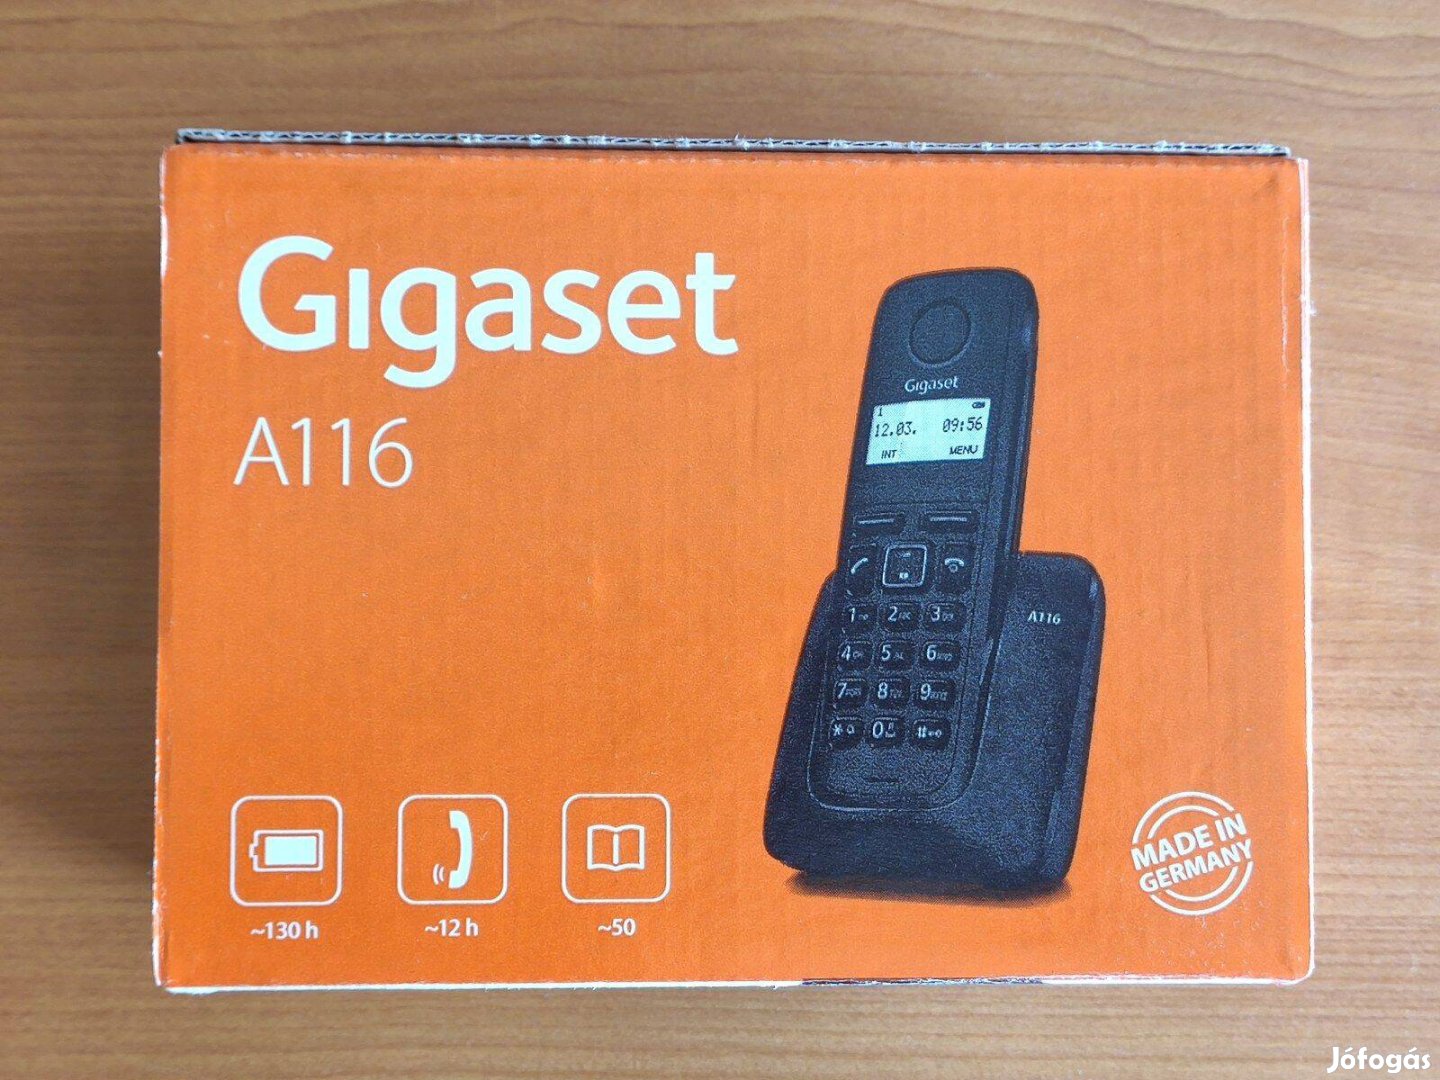 Új Gigaset A116 vezeték nélküli telefon